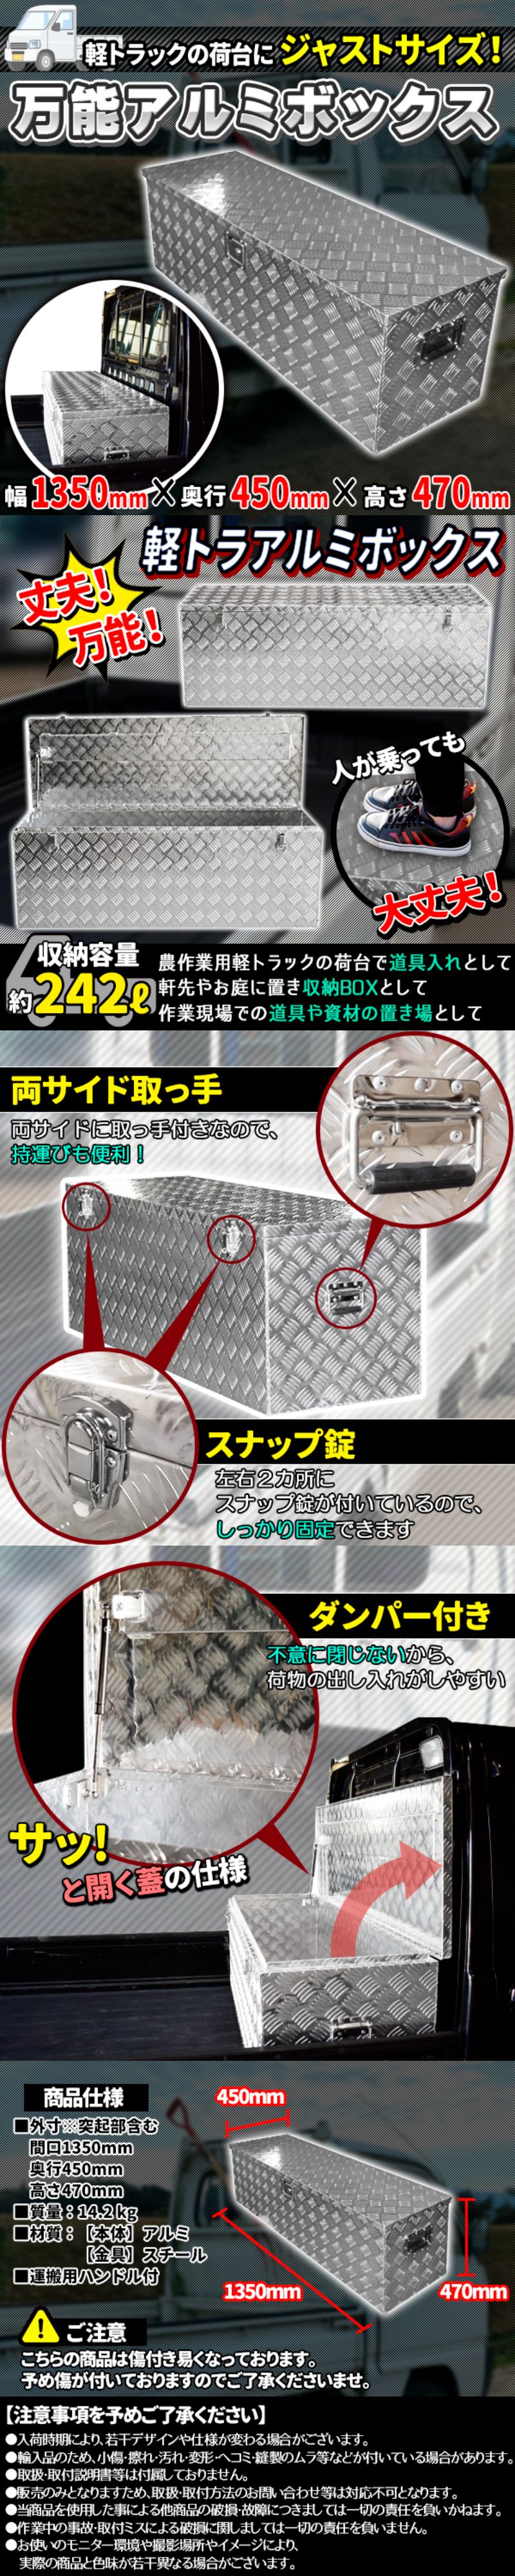 日本初の 万能 アルミ ボックス 工具箱 ツールボックス 軽トラ 荷台